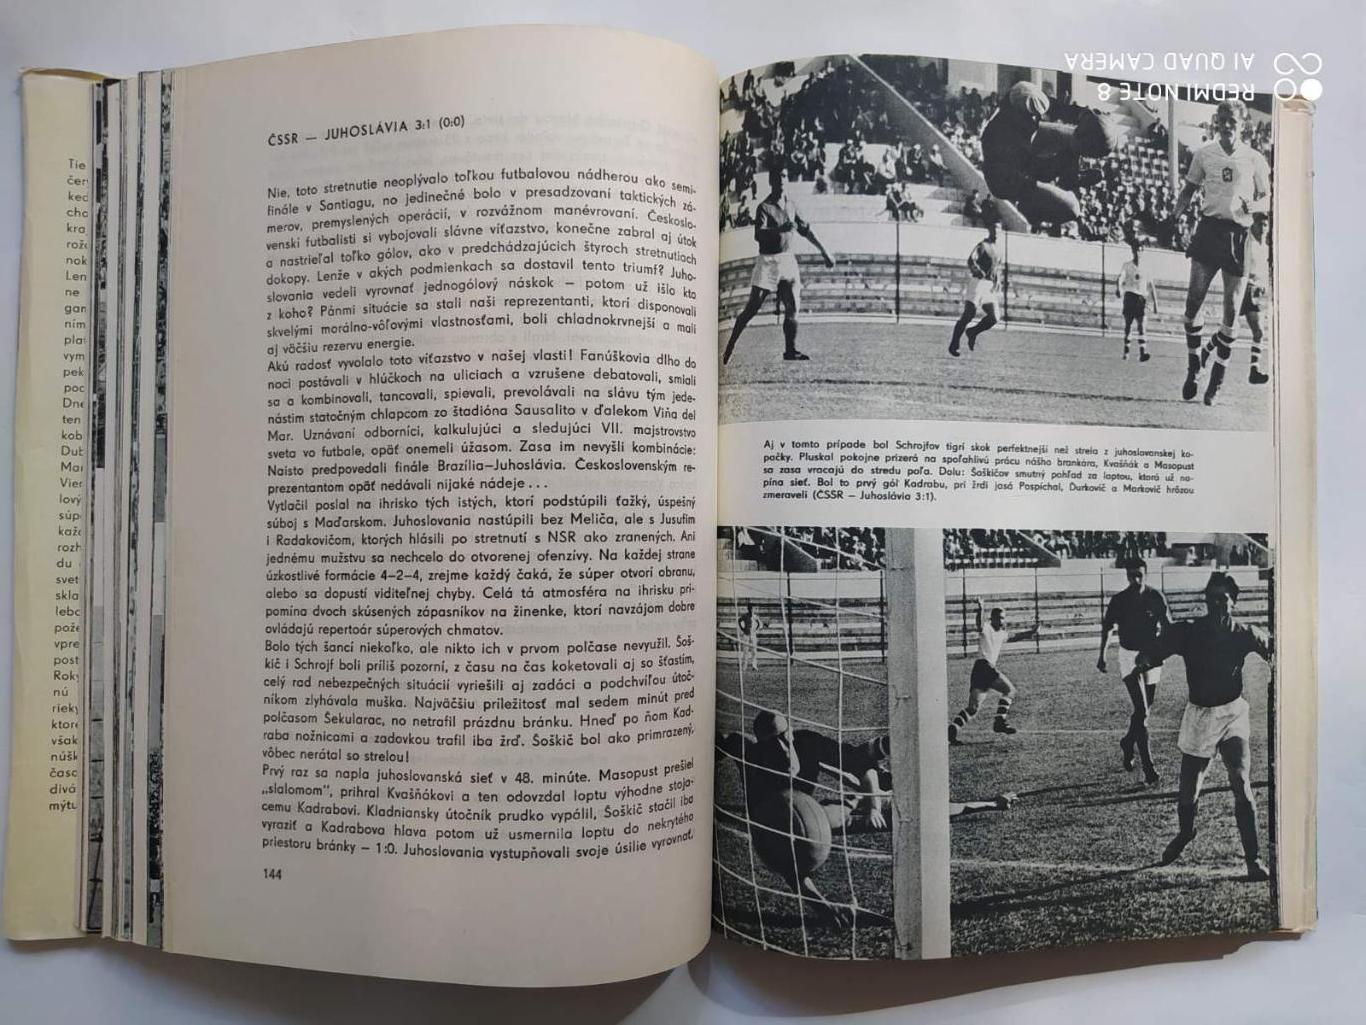 Imrich Hornacek CHILE 1962 Чемпионат мира по футболу в Чили 1962 г. 5